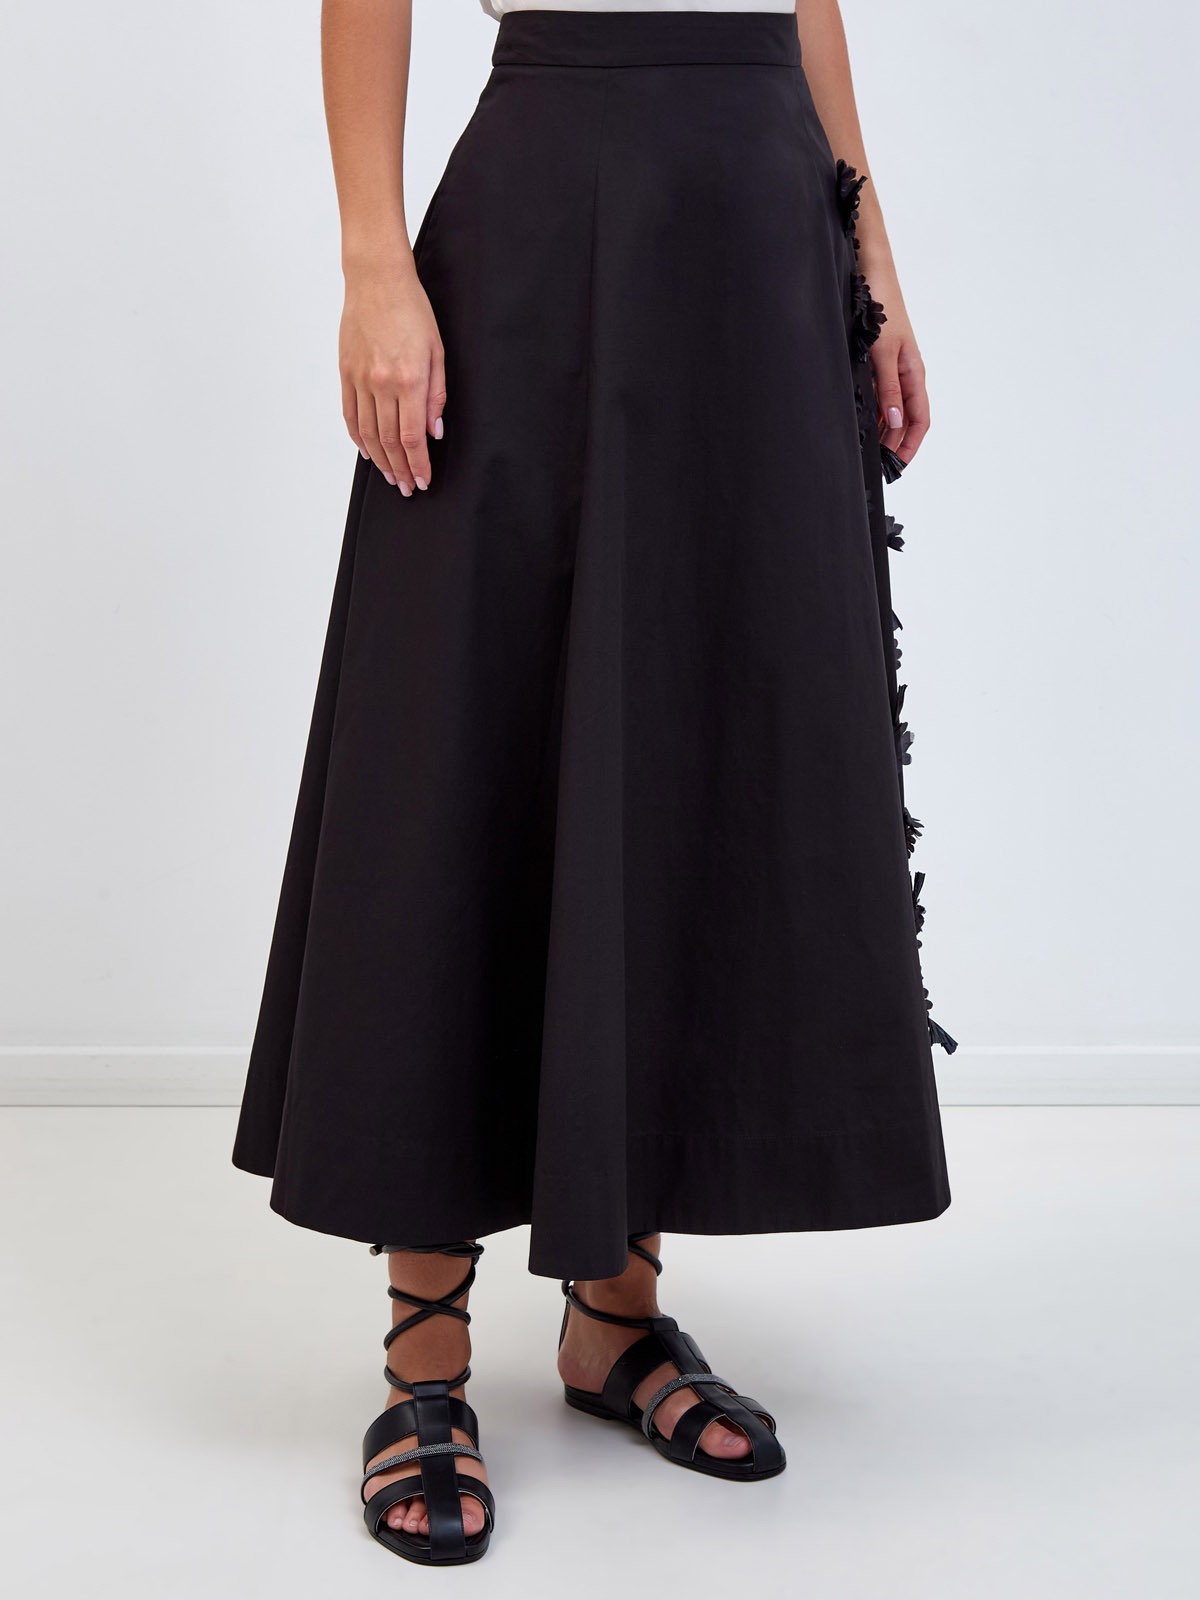 Расклешенная юбка-миди из хлопка с цветочной вышивкой в тон LORENA ANTONIAZZI, размер 42 - фото 3